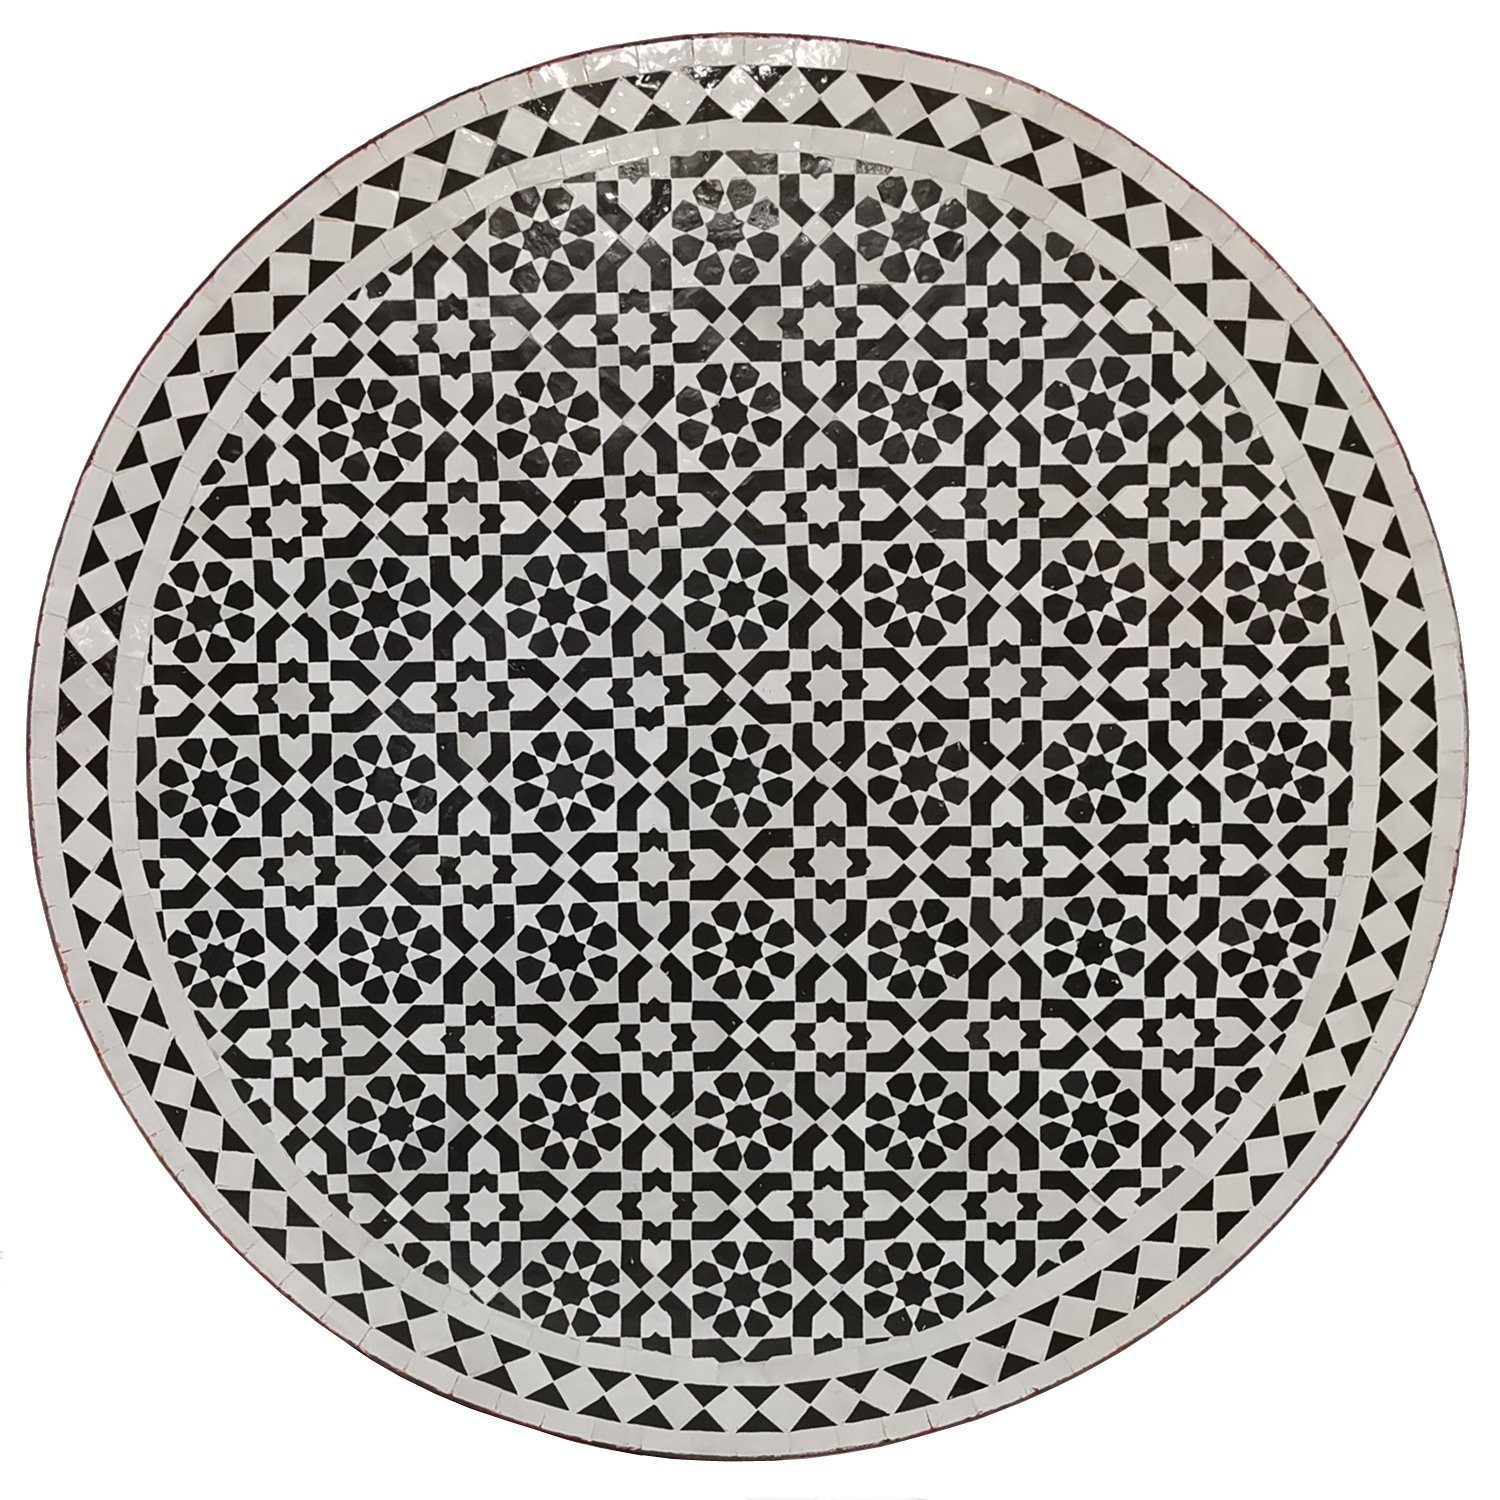 Casa Moro Bistrotisch Mosaiktisch D100 schwarz weiß glasiert rund mit Schmiedeeisen Gestell (Marokkanischer Mosaik Gartentisch Esstisch Terrassentisch, MT2218), Kunsthandwerk aus Marokko